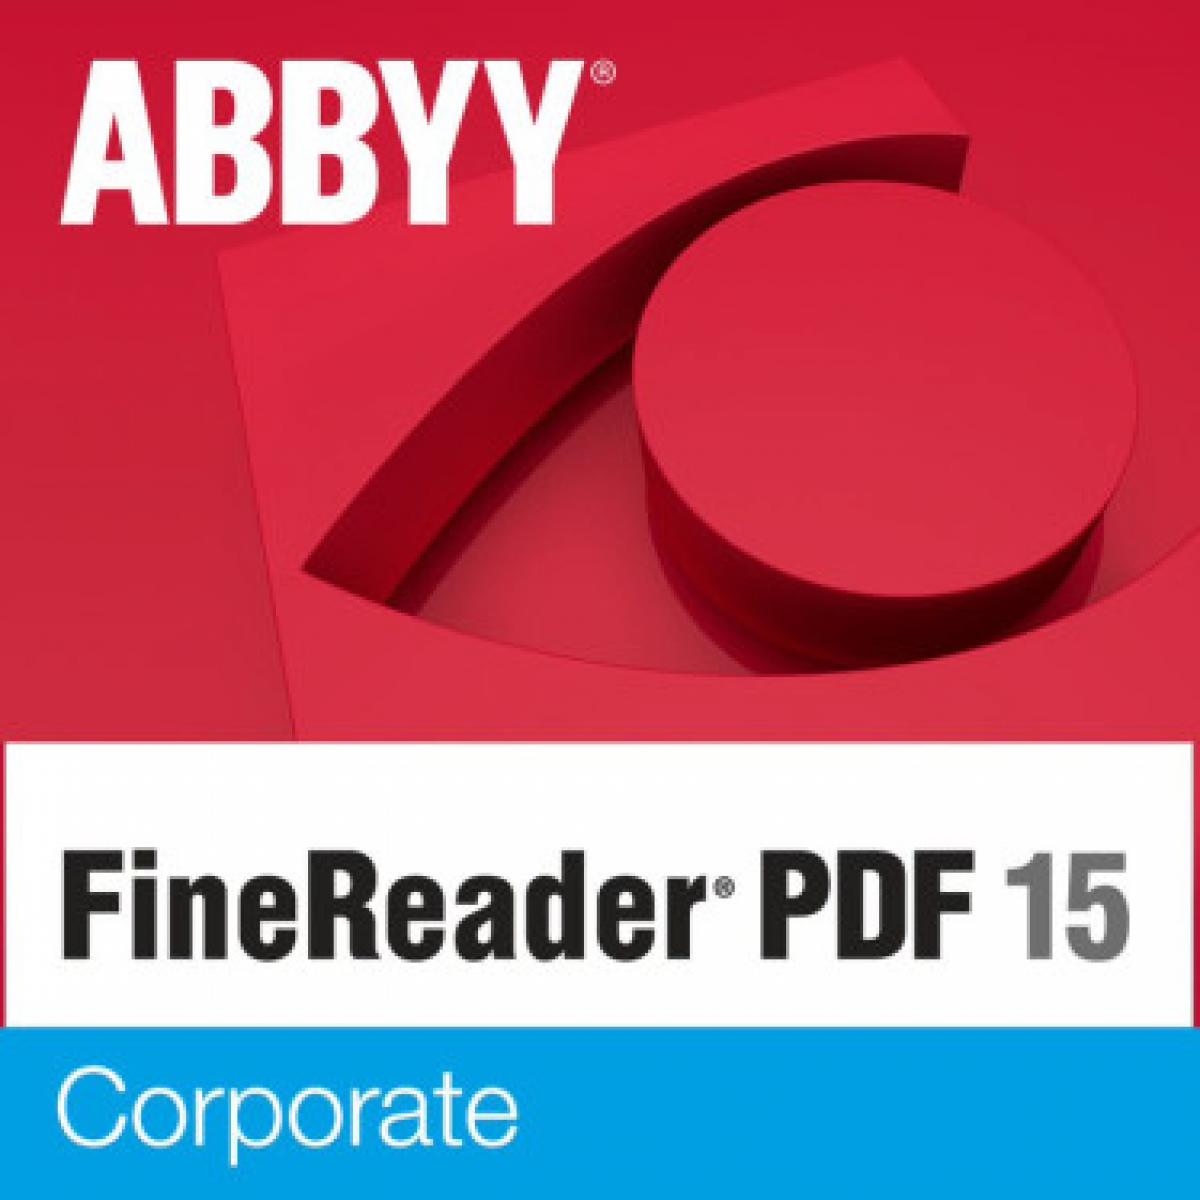 Abbyy - FineReader PDF 15 Corporate - Licence Perpétuelle - 1 utilisateur - Traitement de Texte & Tableur